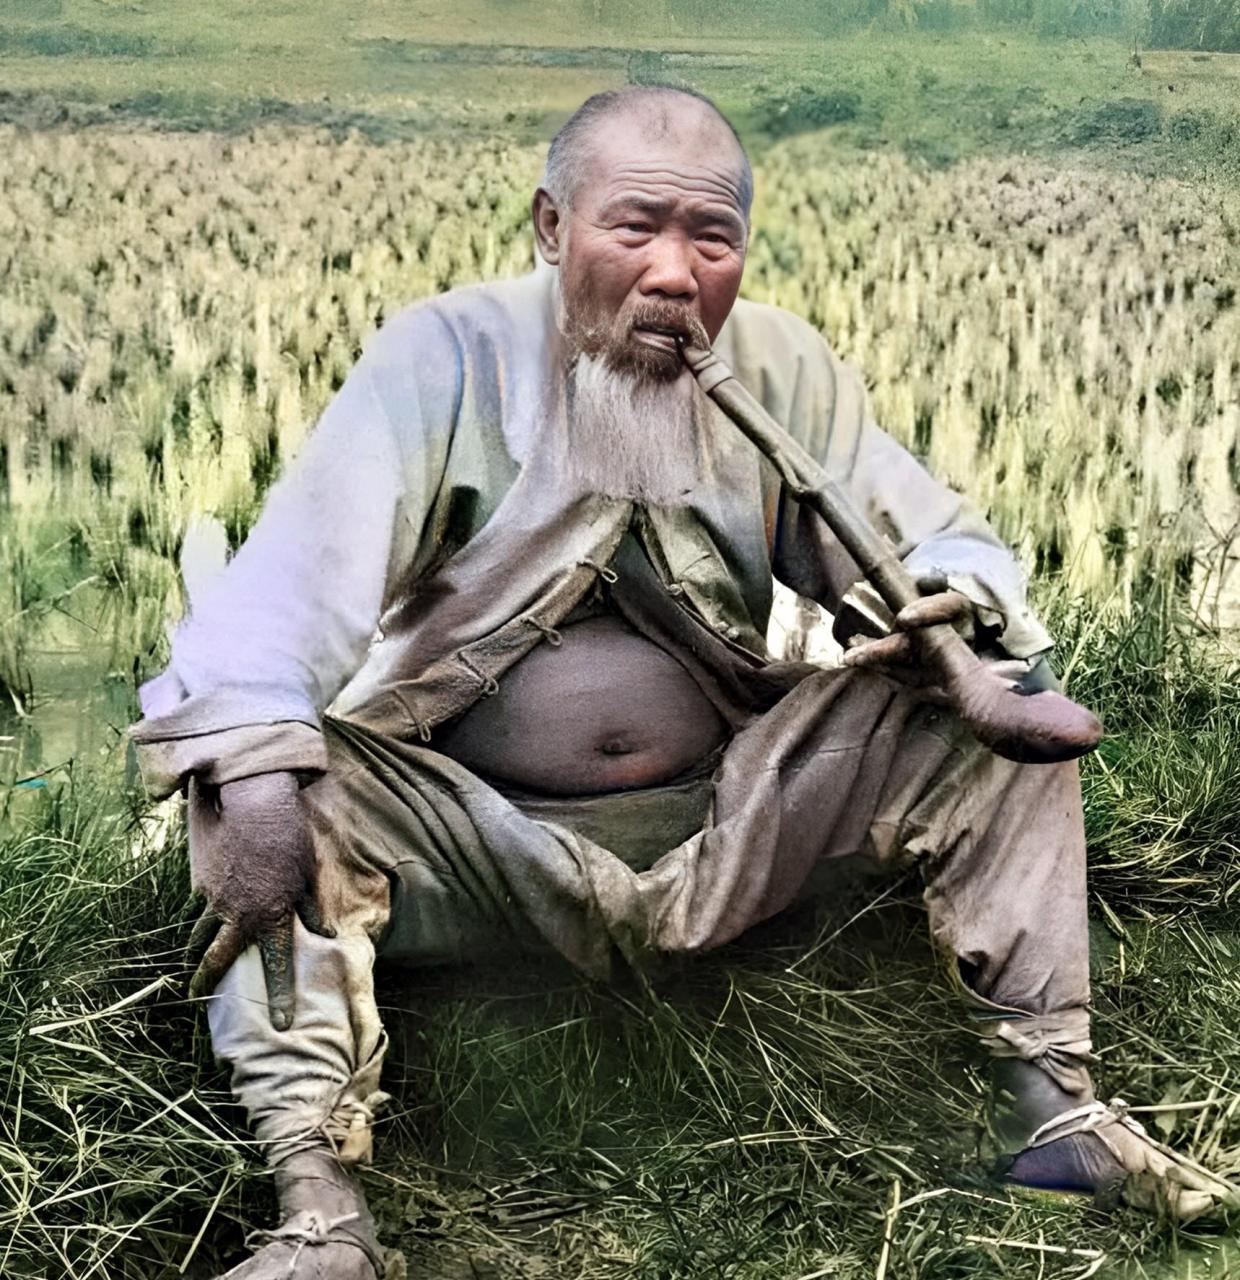 1925年,广州的一位农民伯伯与妻子,女儿在稻田边休息